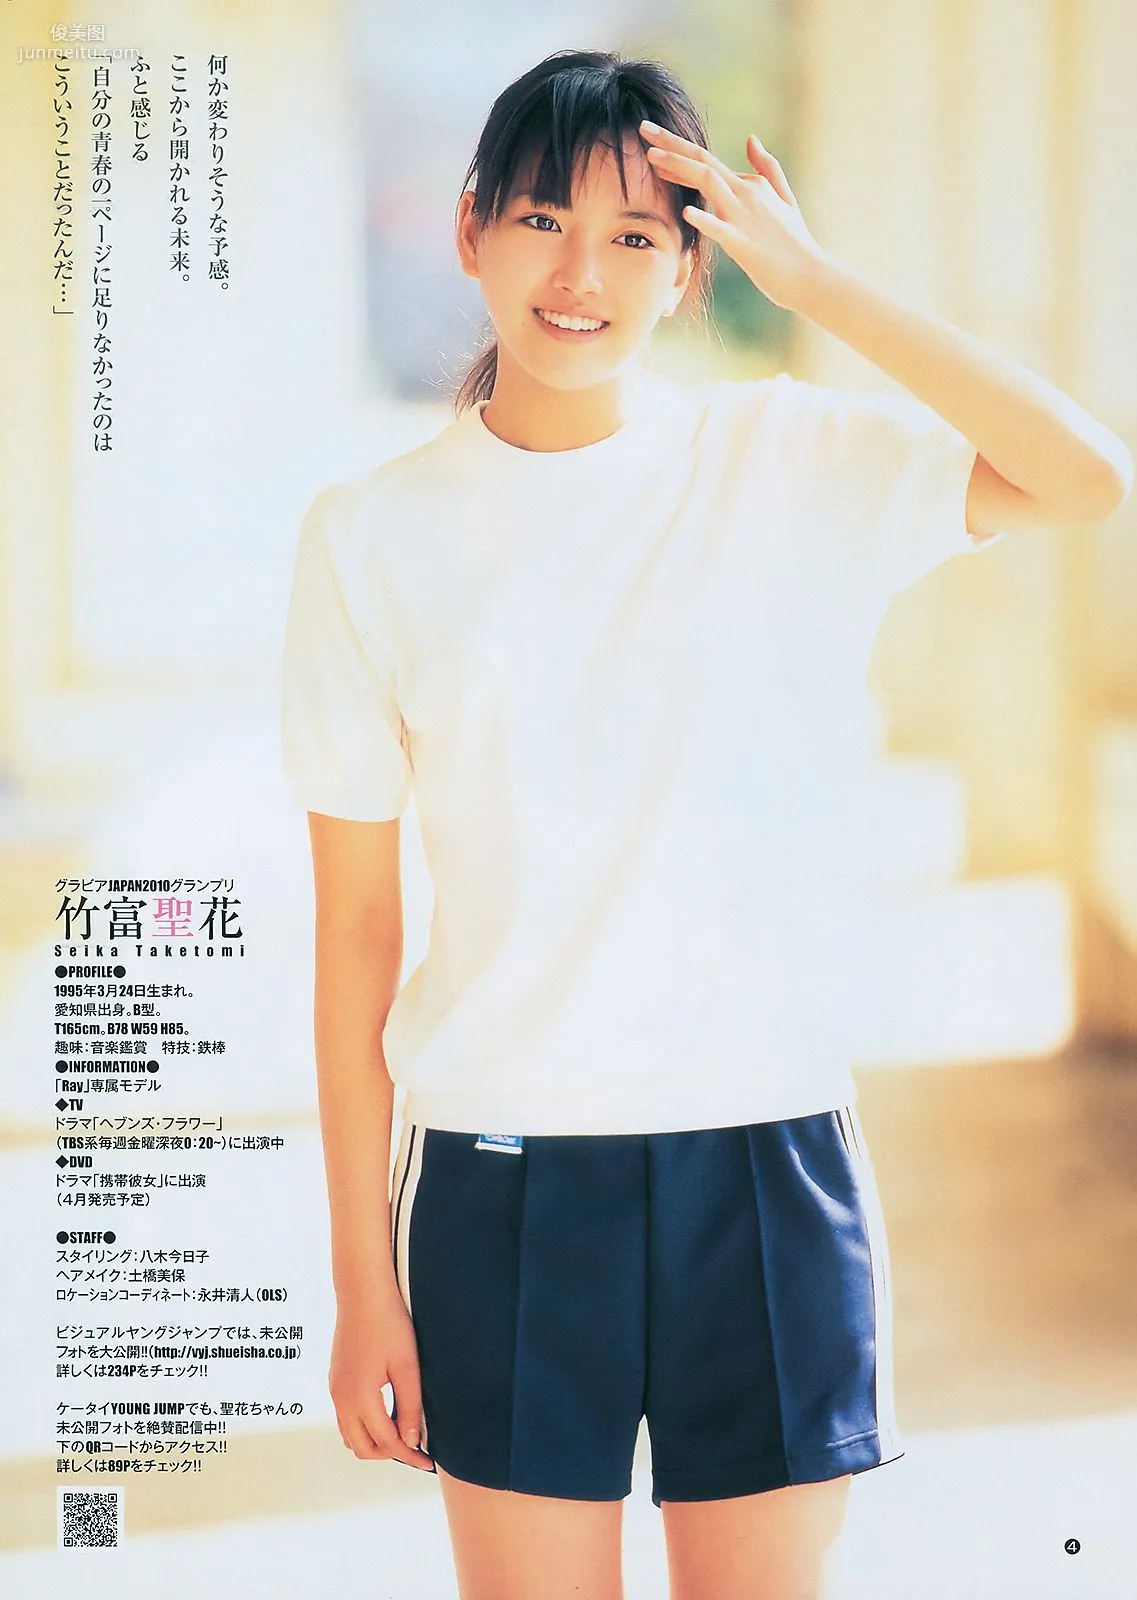 柏木由紀 竹富聖花 [Weekly Young Jump] 2011年No.08 写真杂志12